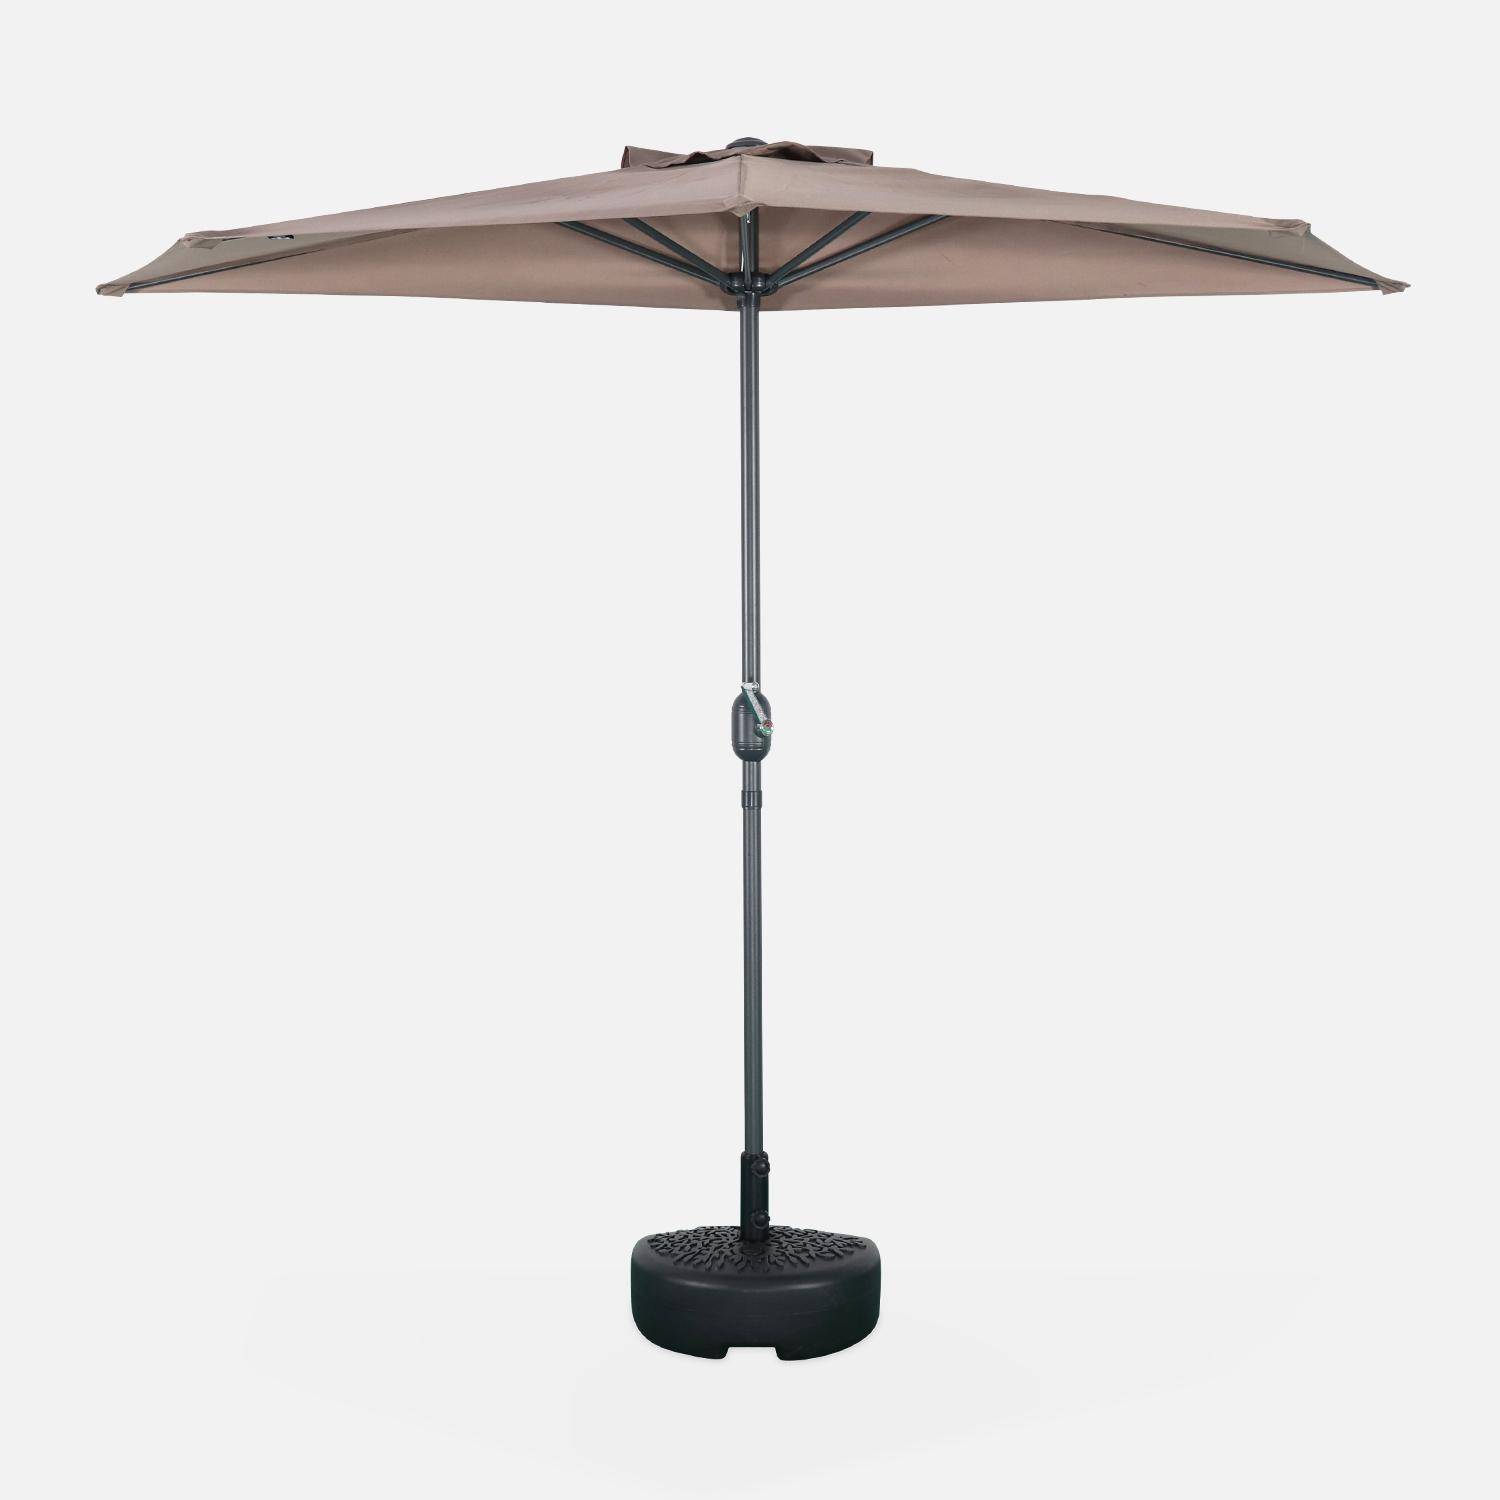  Parasol de balcon Ø250cm  – CALVI – Demi-parasol droit, mât en aluminium avec manivelle d’ouverture, toile taupe Photo2